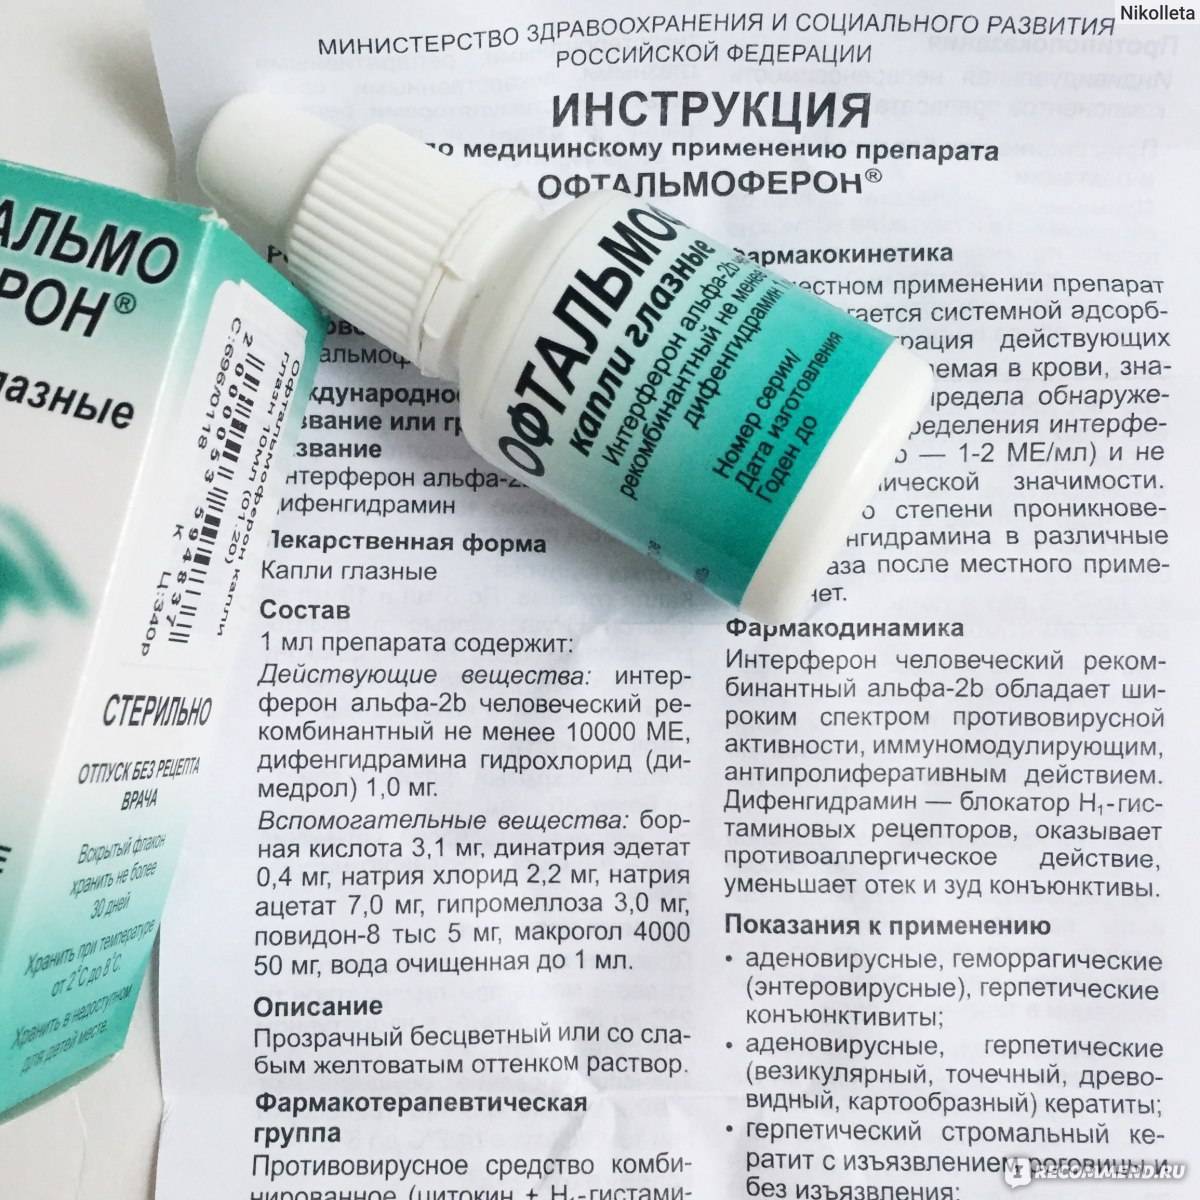 Офтальмоферон аналоги - medcentre24.ru - справочник лекарств, отзывы о клиниках и врачах, запись на прием онлайн